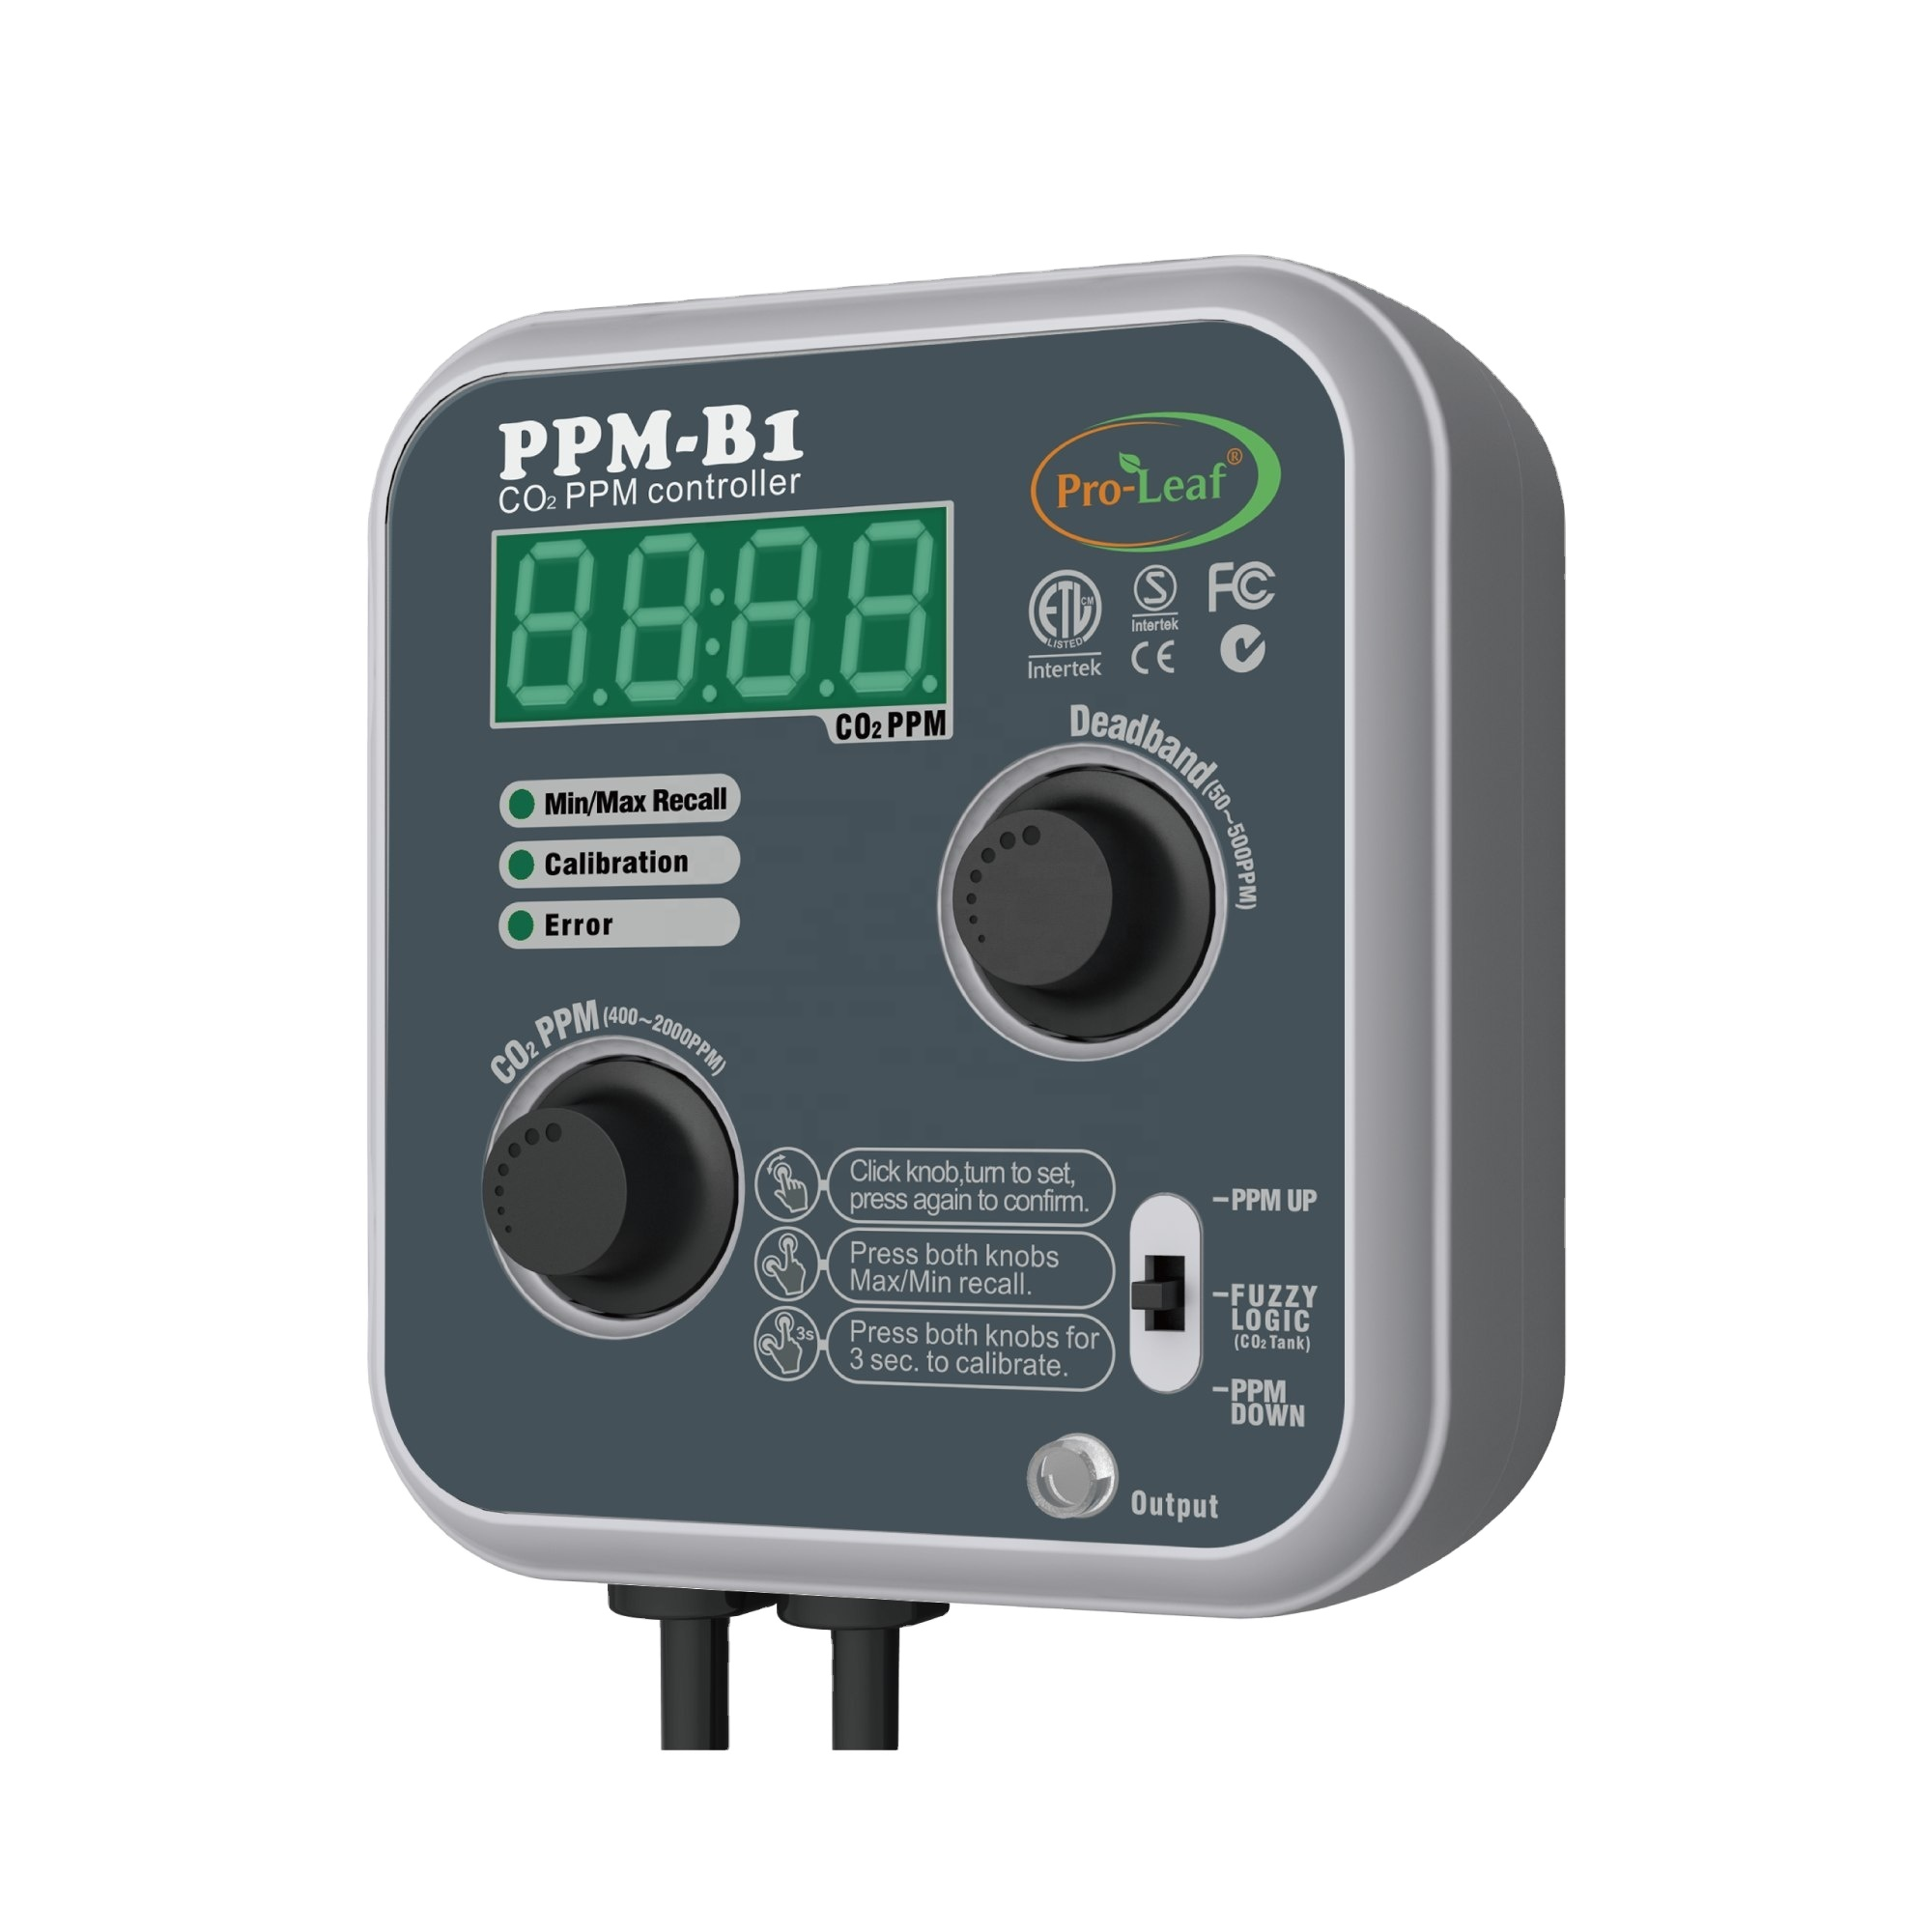 PPM-B1 TOP Περιβαλλοντικός ελεγκτής PPM CO2